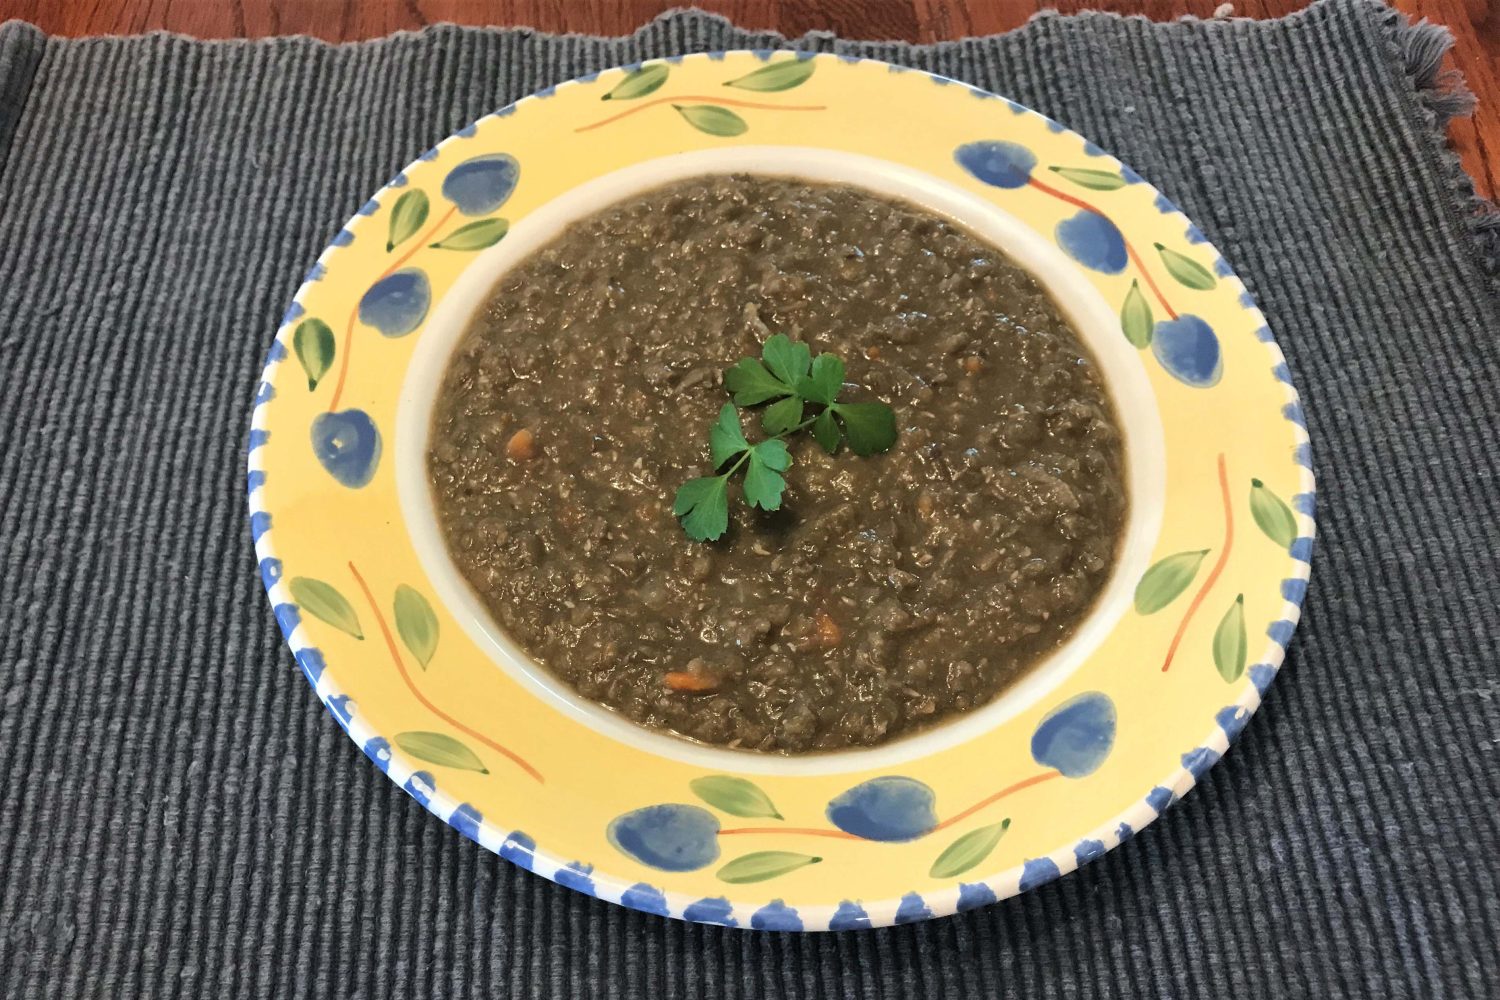 French lentil soup. (Photo/Dr. Marguerite Ragnow)